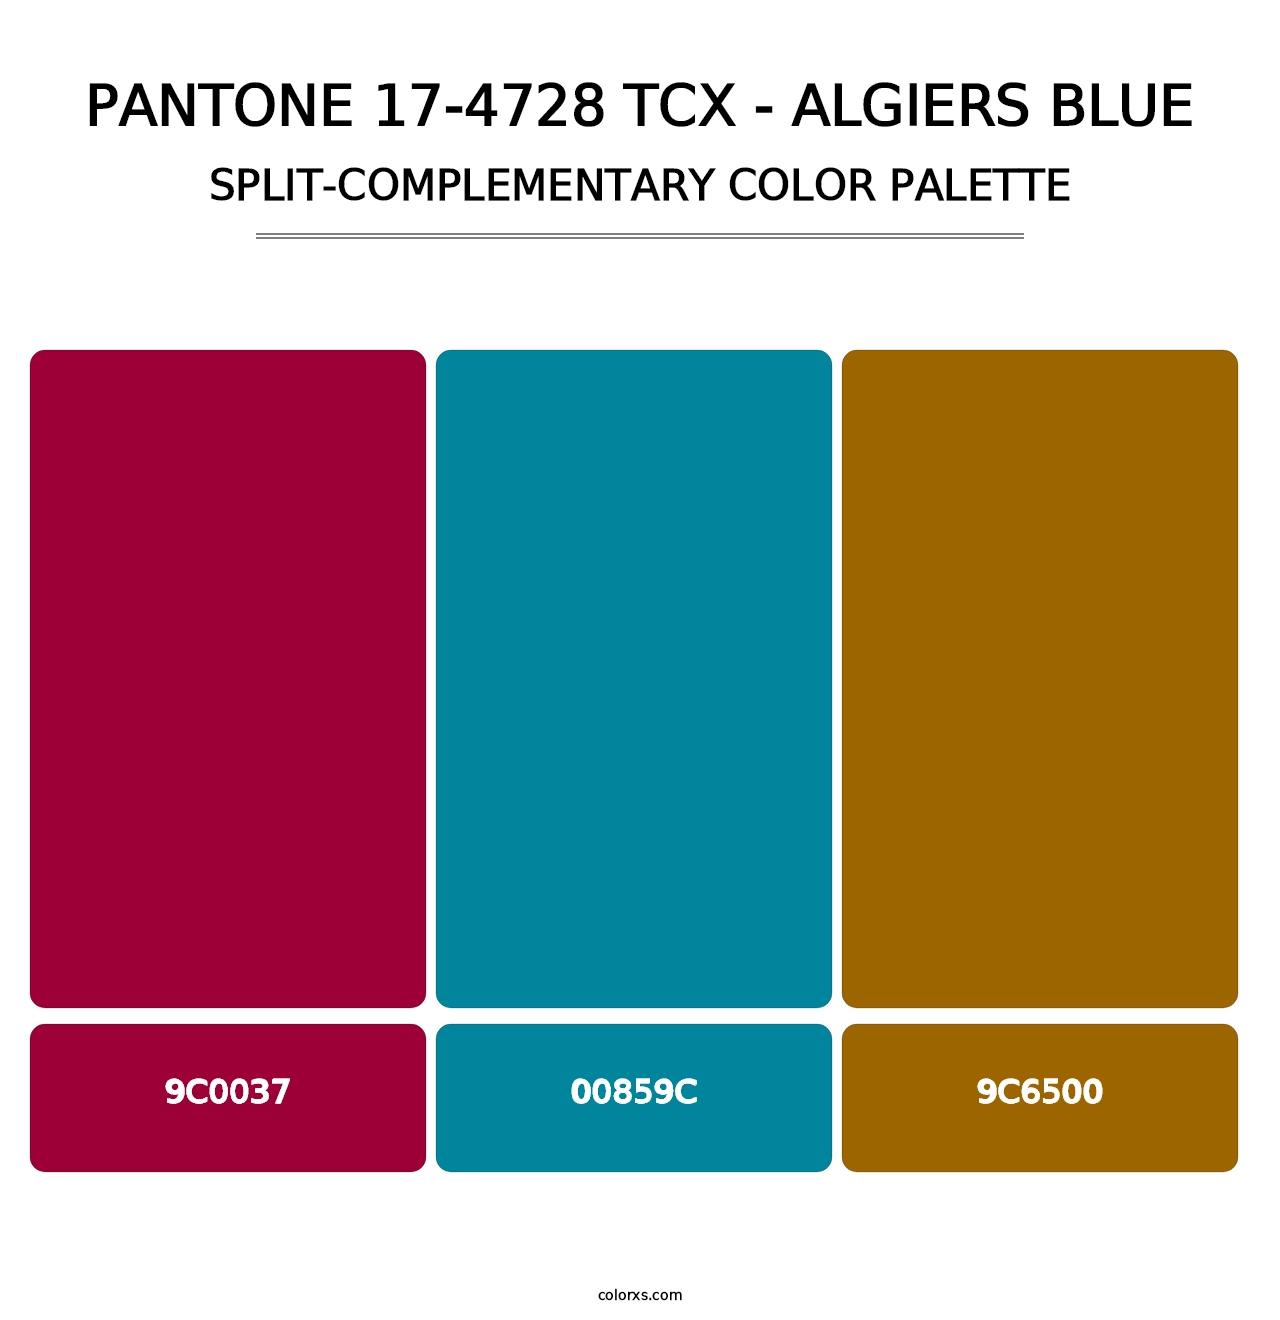 PANTONE 17-4728 TCX - Algiers Blue - Split-Complementary Color Palette